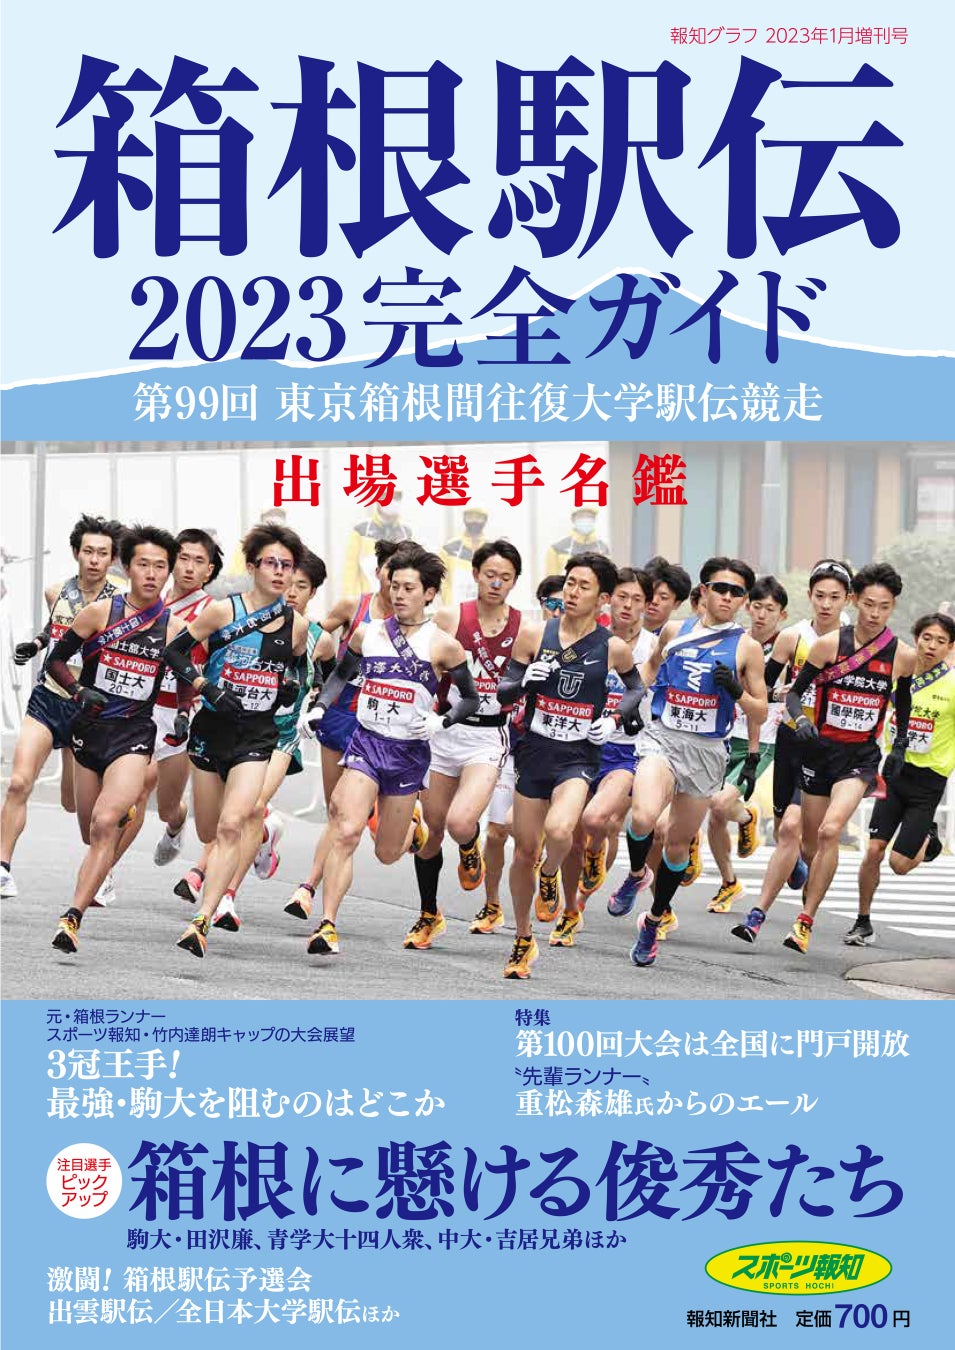 ニューバランスは「第13回渋谷・表参道Women’s Run」に協賛します